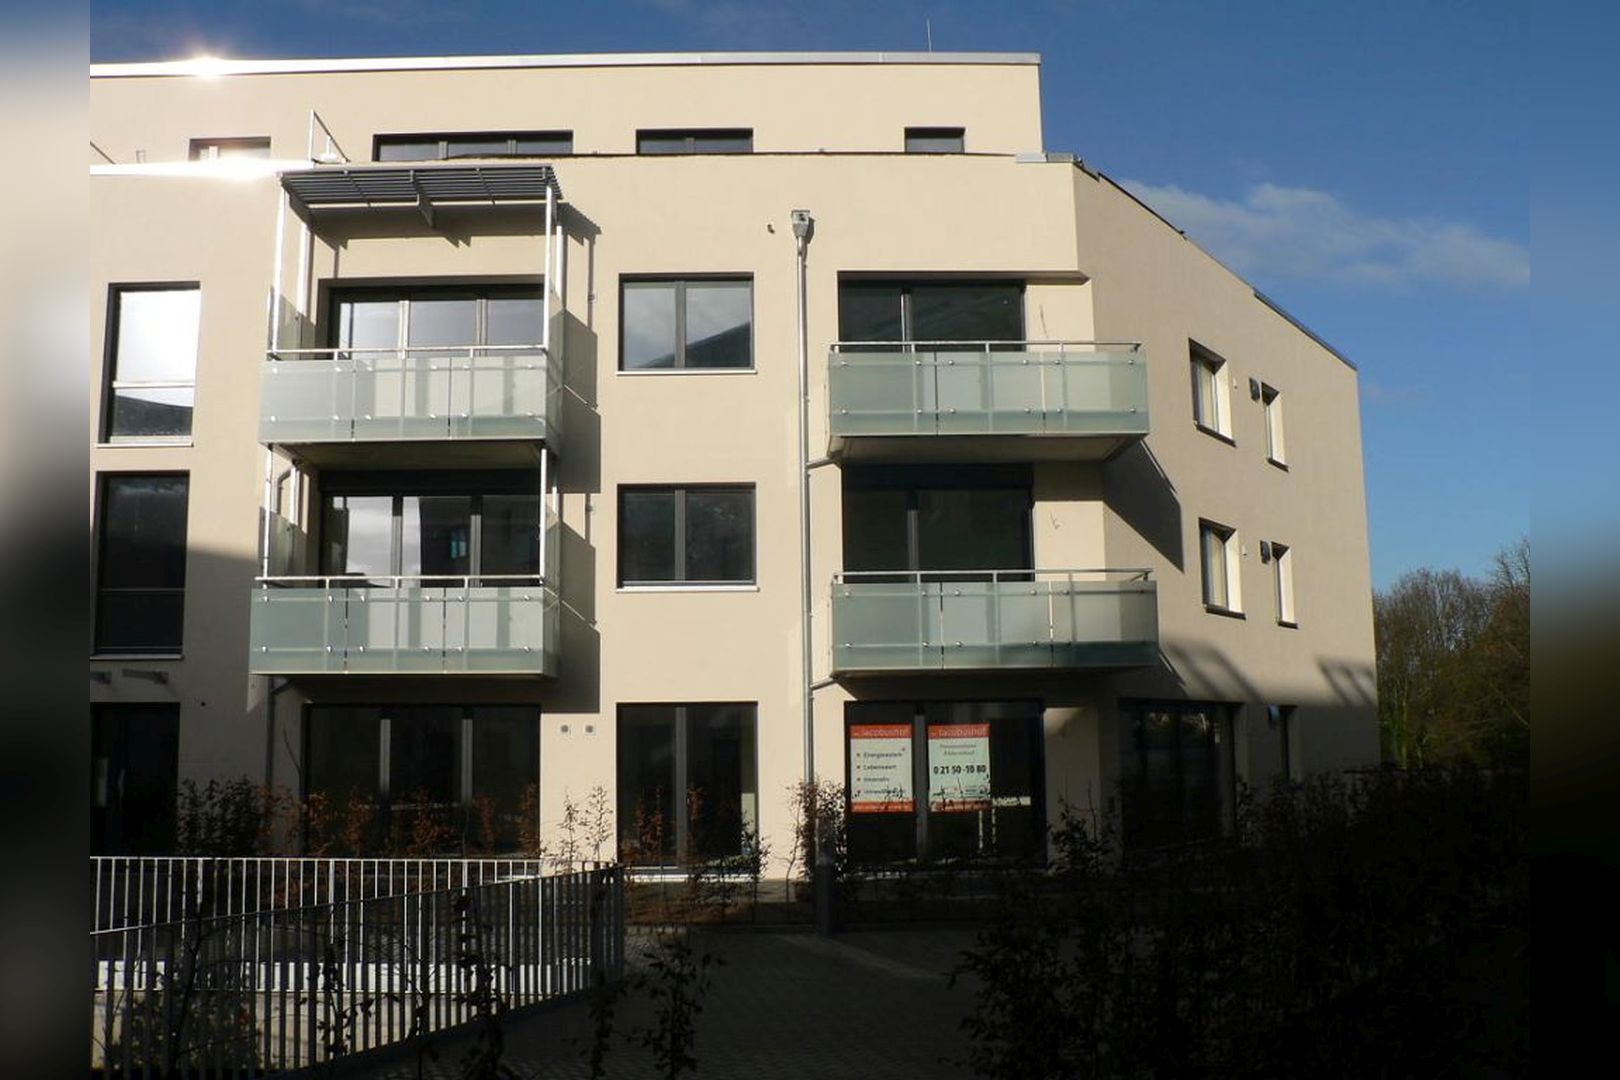 Immobilie Nr.Hilden 042 - 2-Raum-Gartenwohnung in ruhiger Innenhoflage - Bild 3.jpg